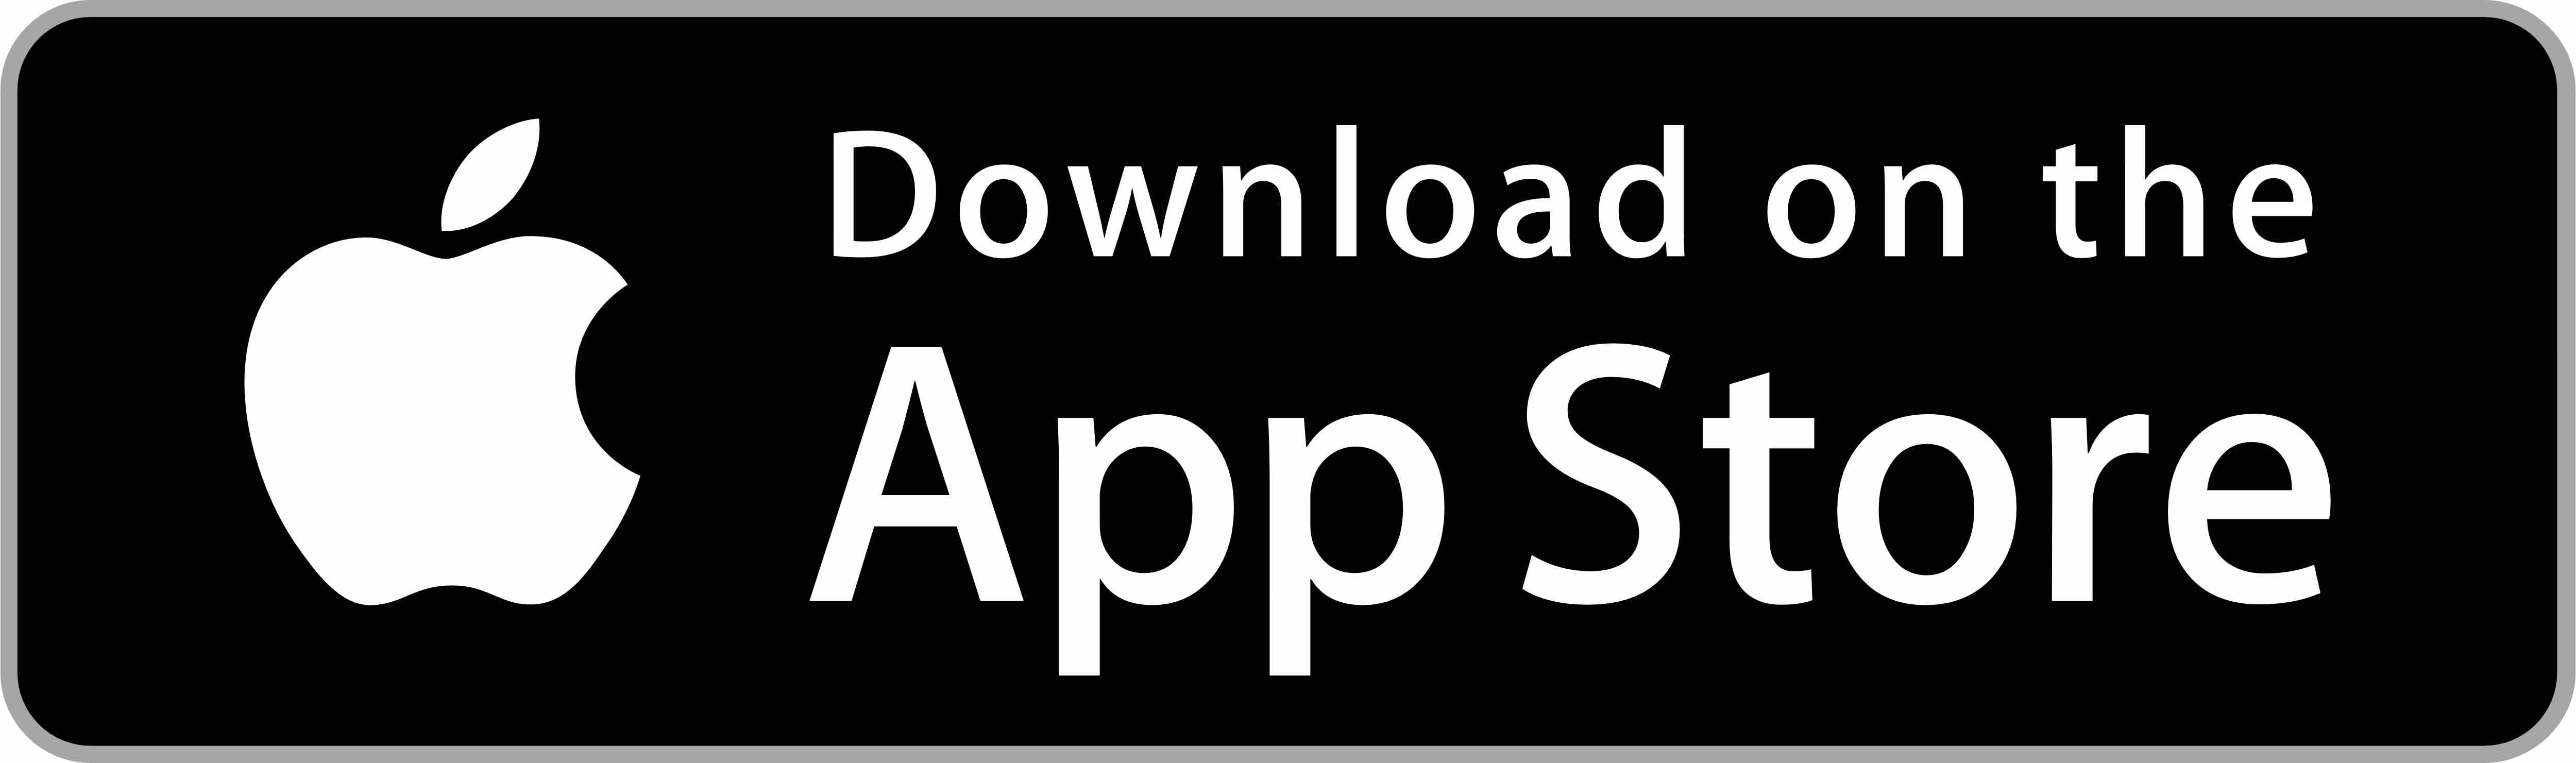 Stock Calculator App Download